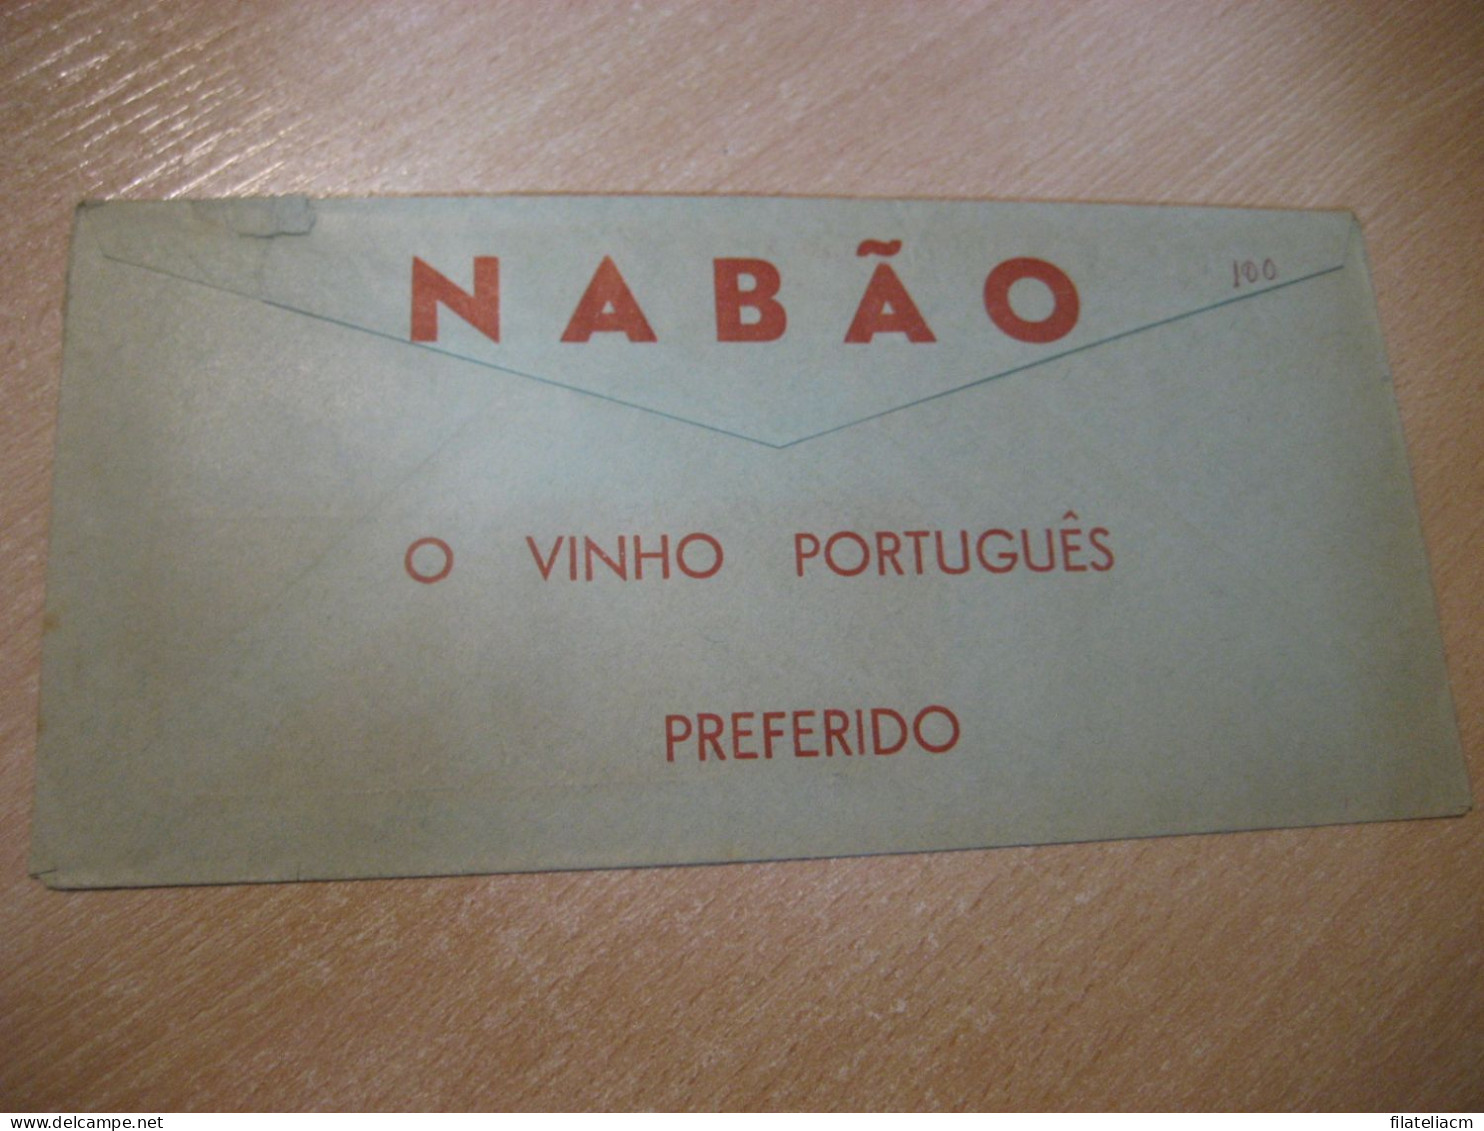 LISBOA 1959 Aguardente 1920 Serradagres Meter Mail Cancel NABAO Vinho Wine Enology Slight Faults Cover PORTUGAL - Briefe U. Dokumente